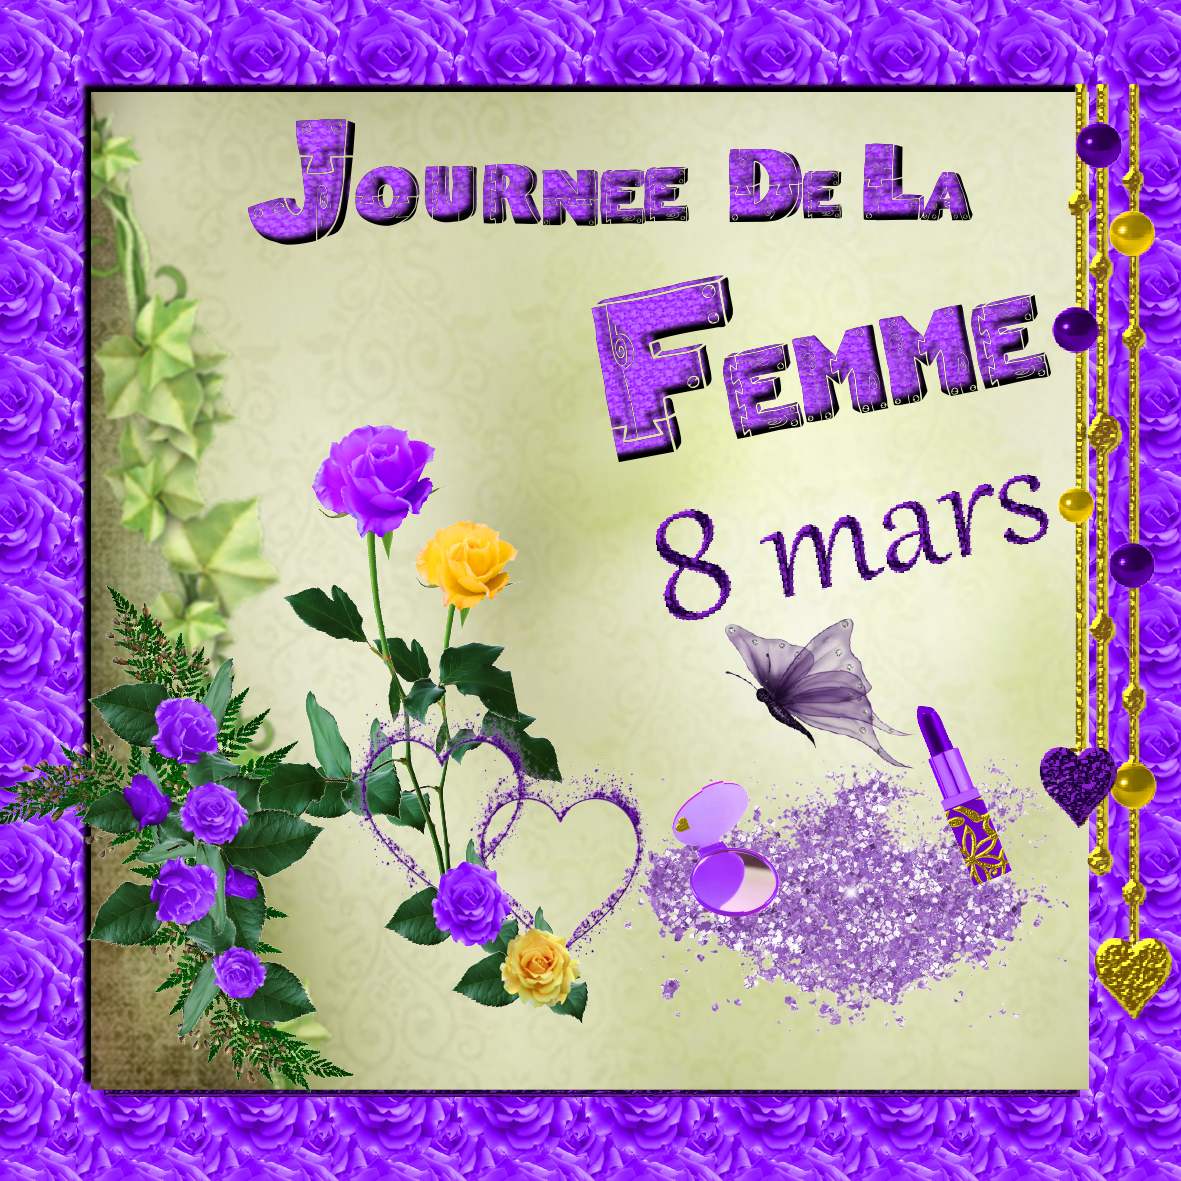 تهنئة للمرأة بمناسبة 8 مارس + مسرحية + حقوق المرأة...8 MARS Realisation_du_08-03-12+journee+de+la+femme